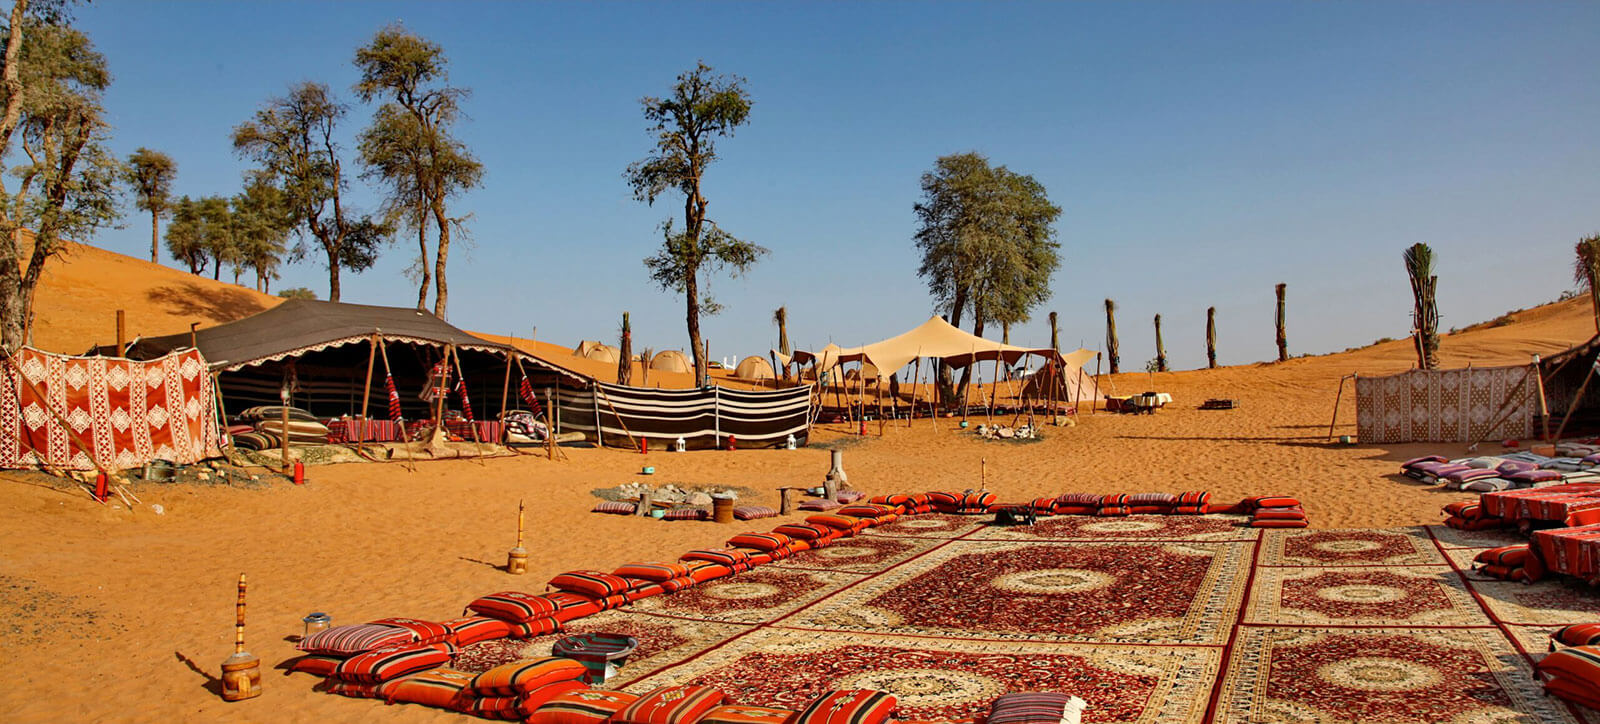 Bedouin Experience